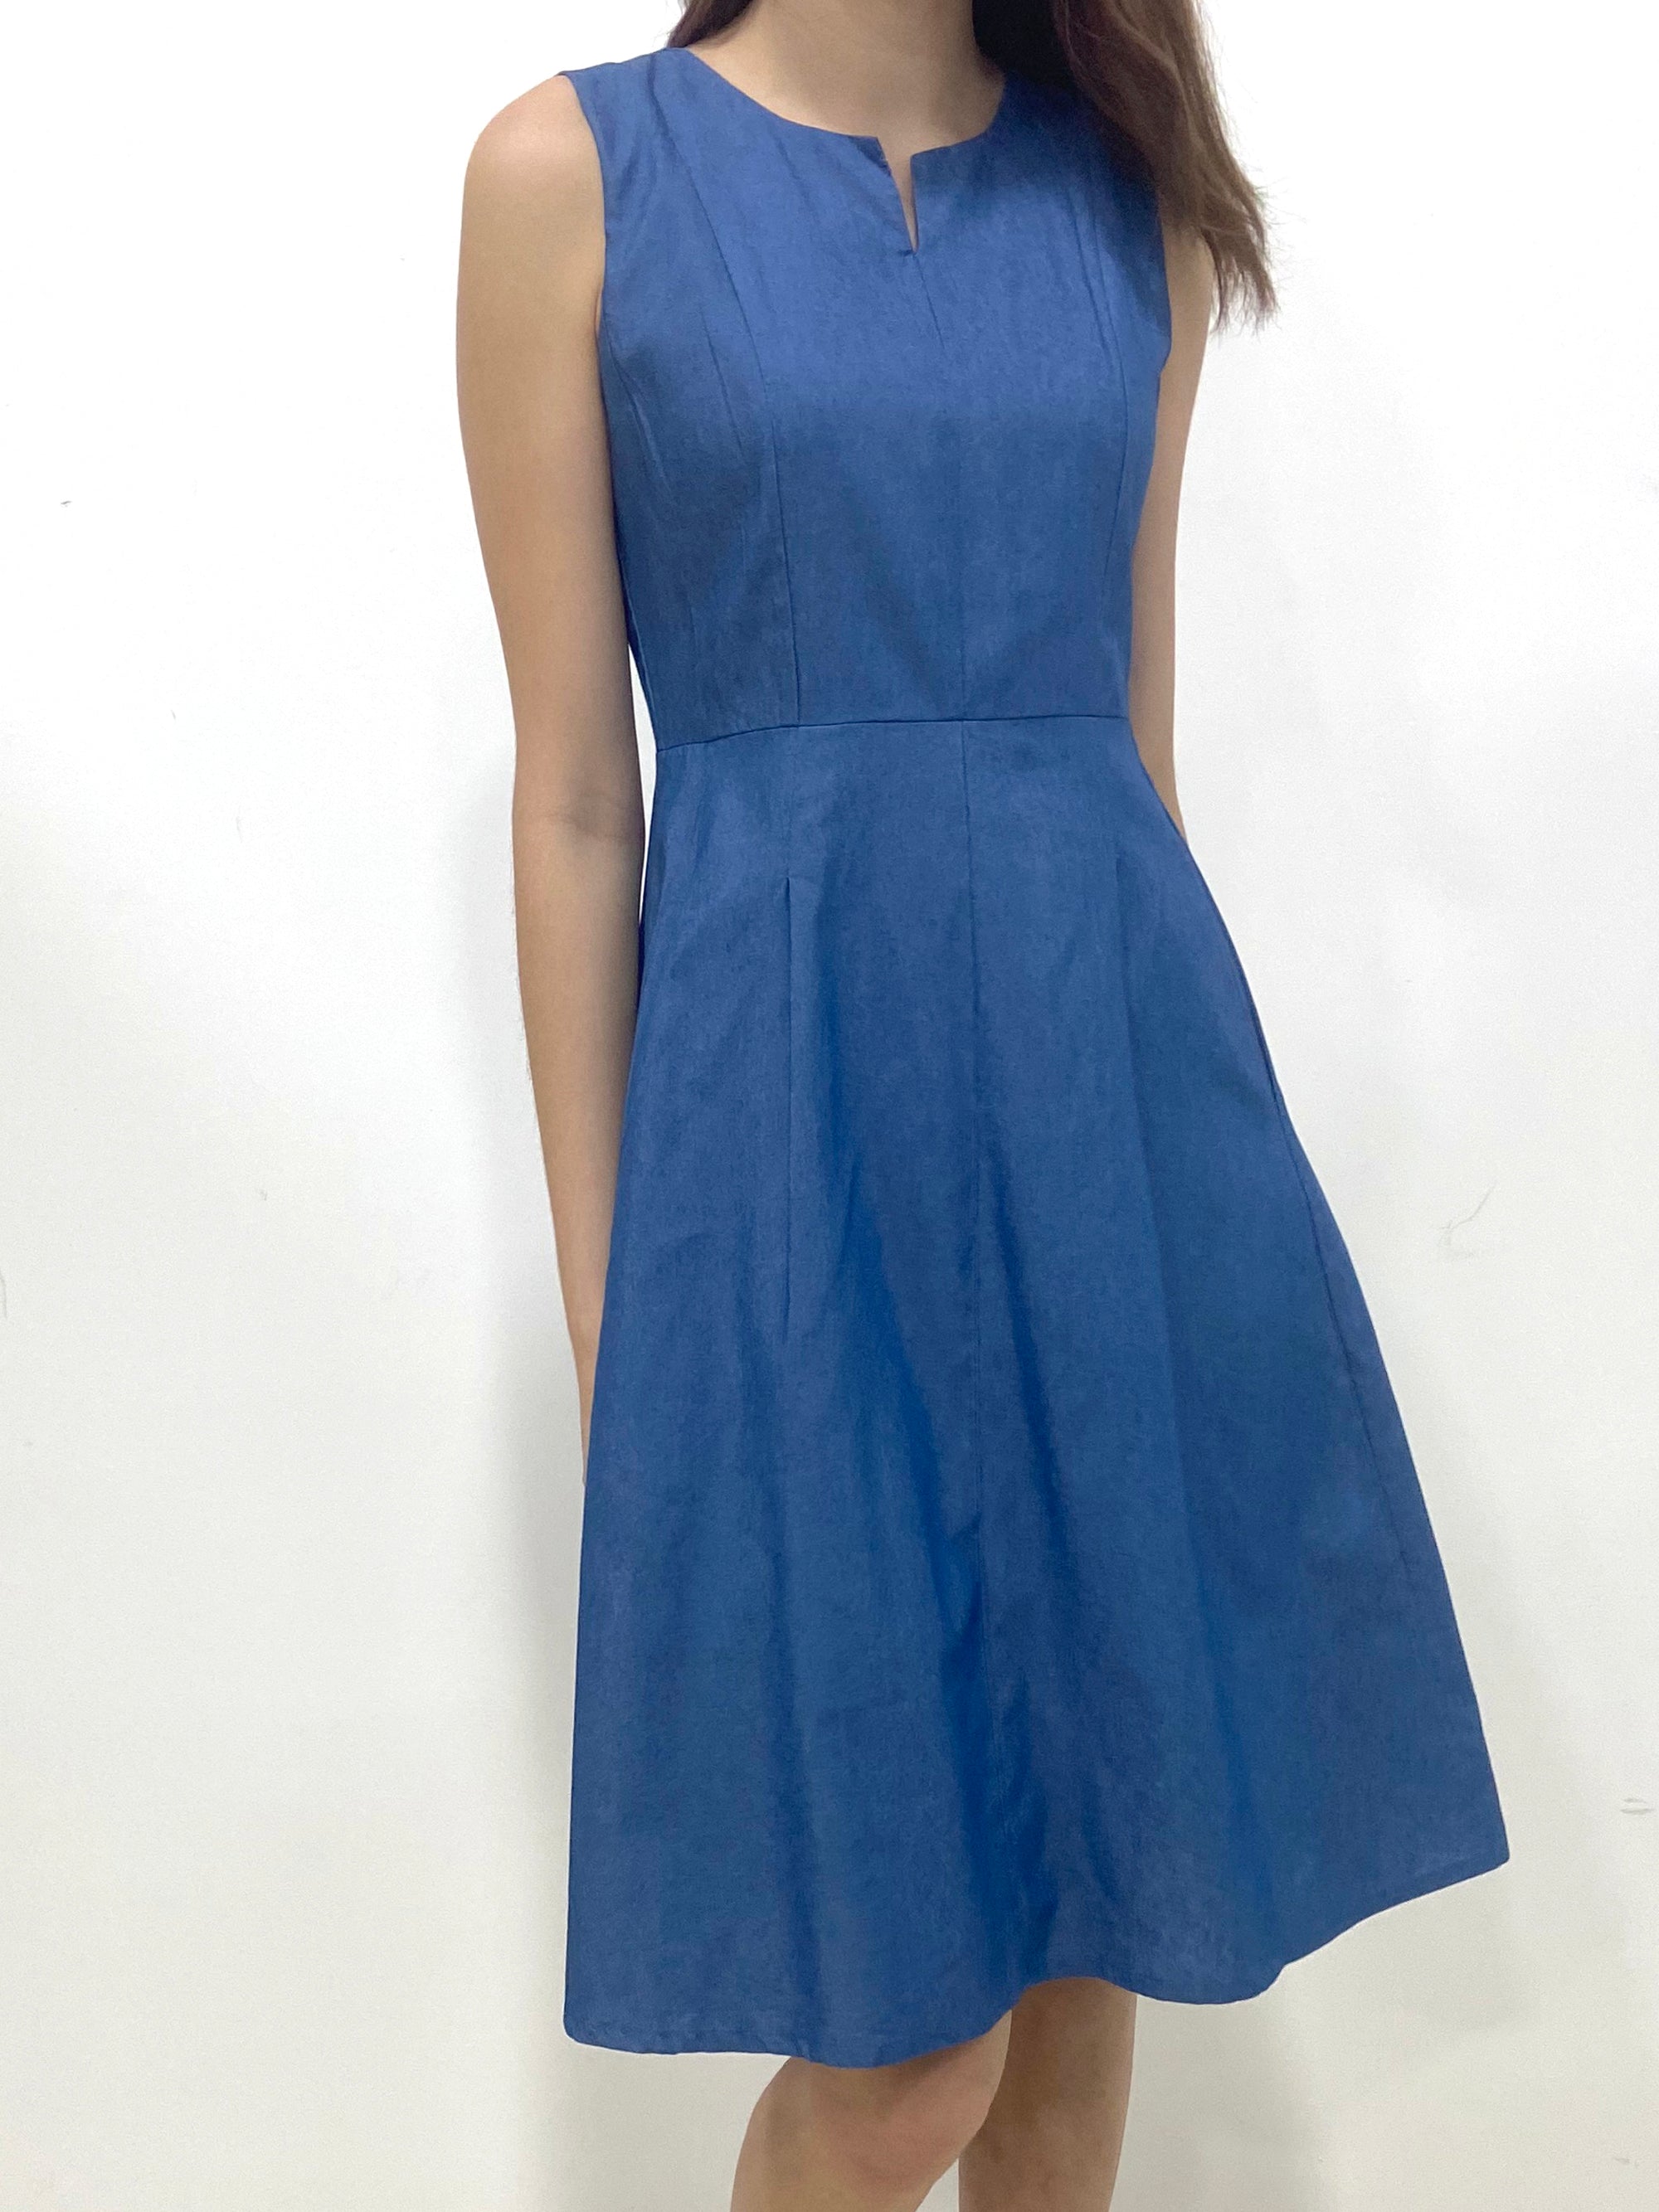 Slit Neckline A Line Dress (Non-returnable) - Ferlicious